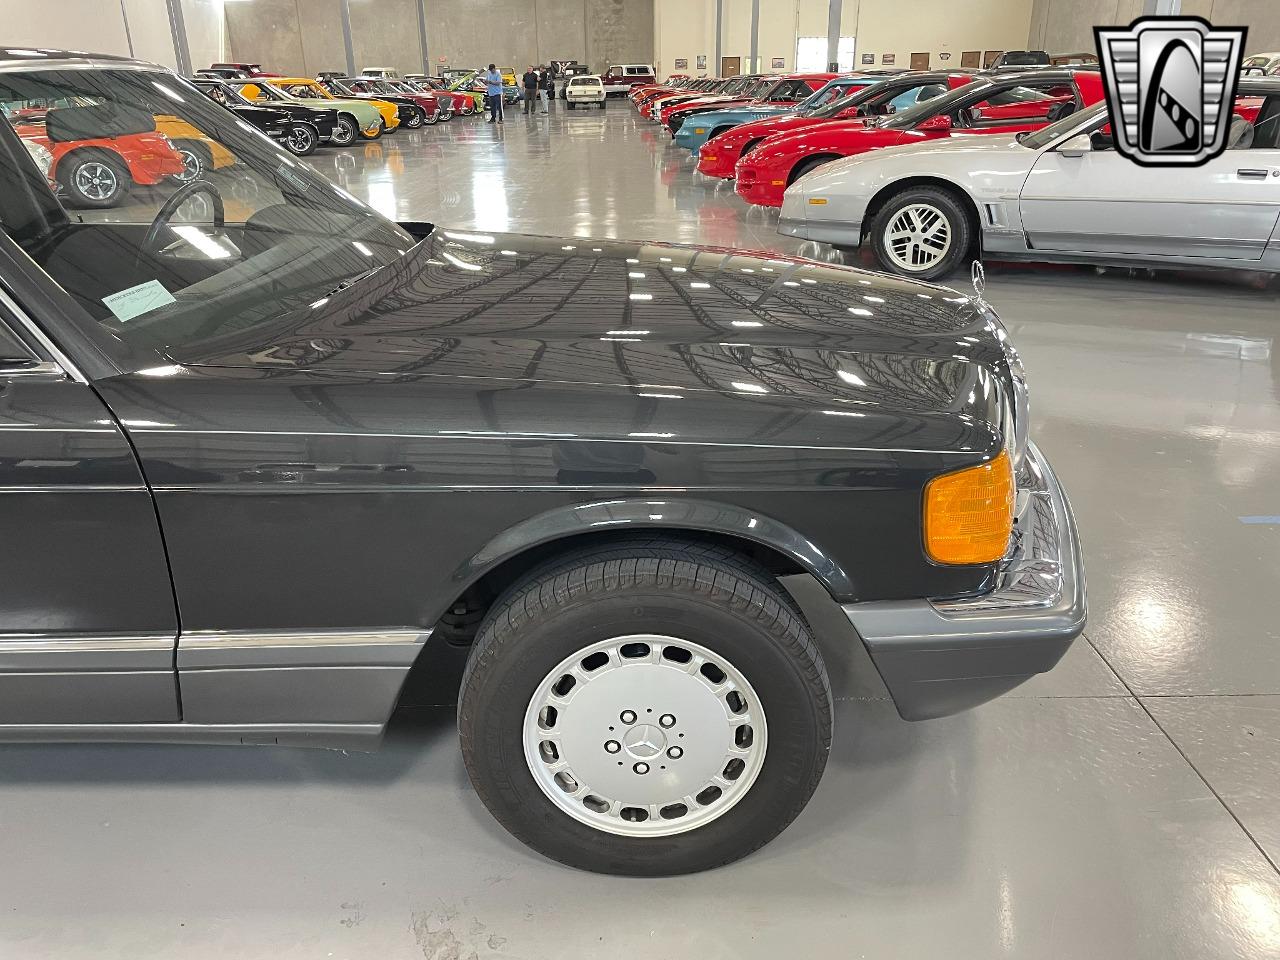 1989 Mercedes - Benz 420SEL